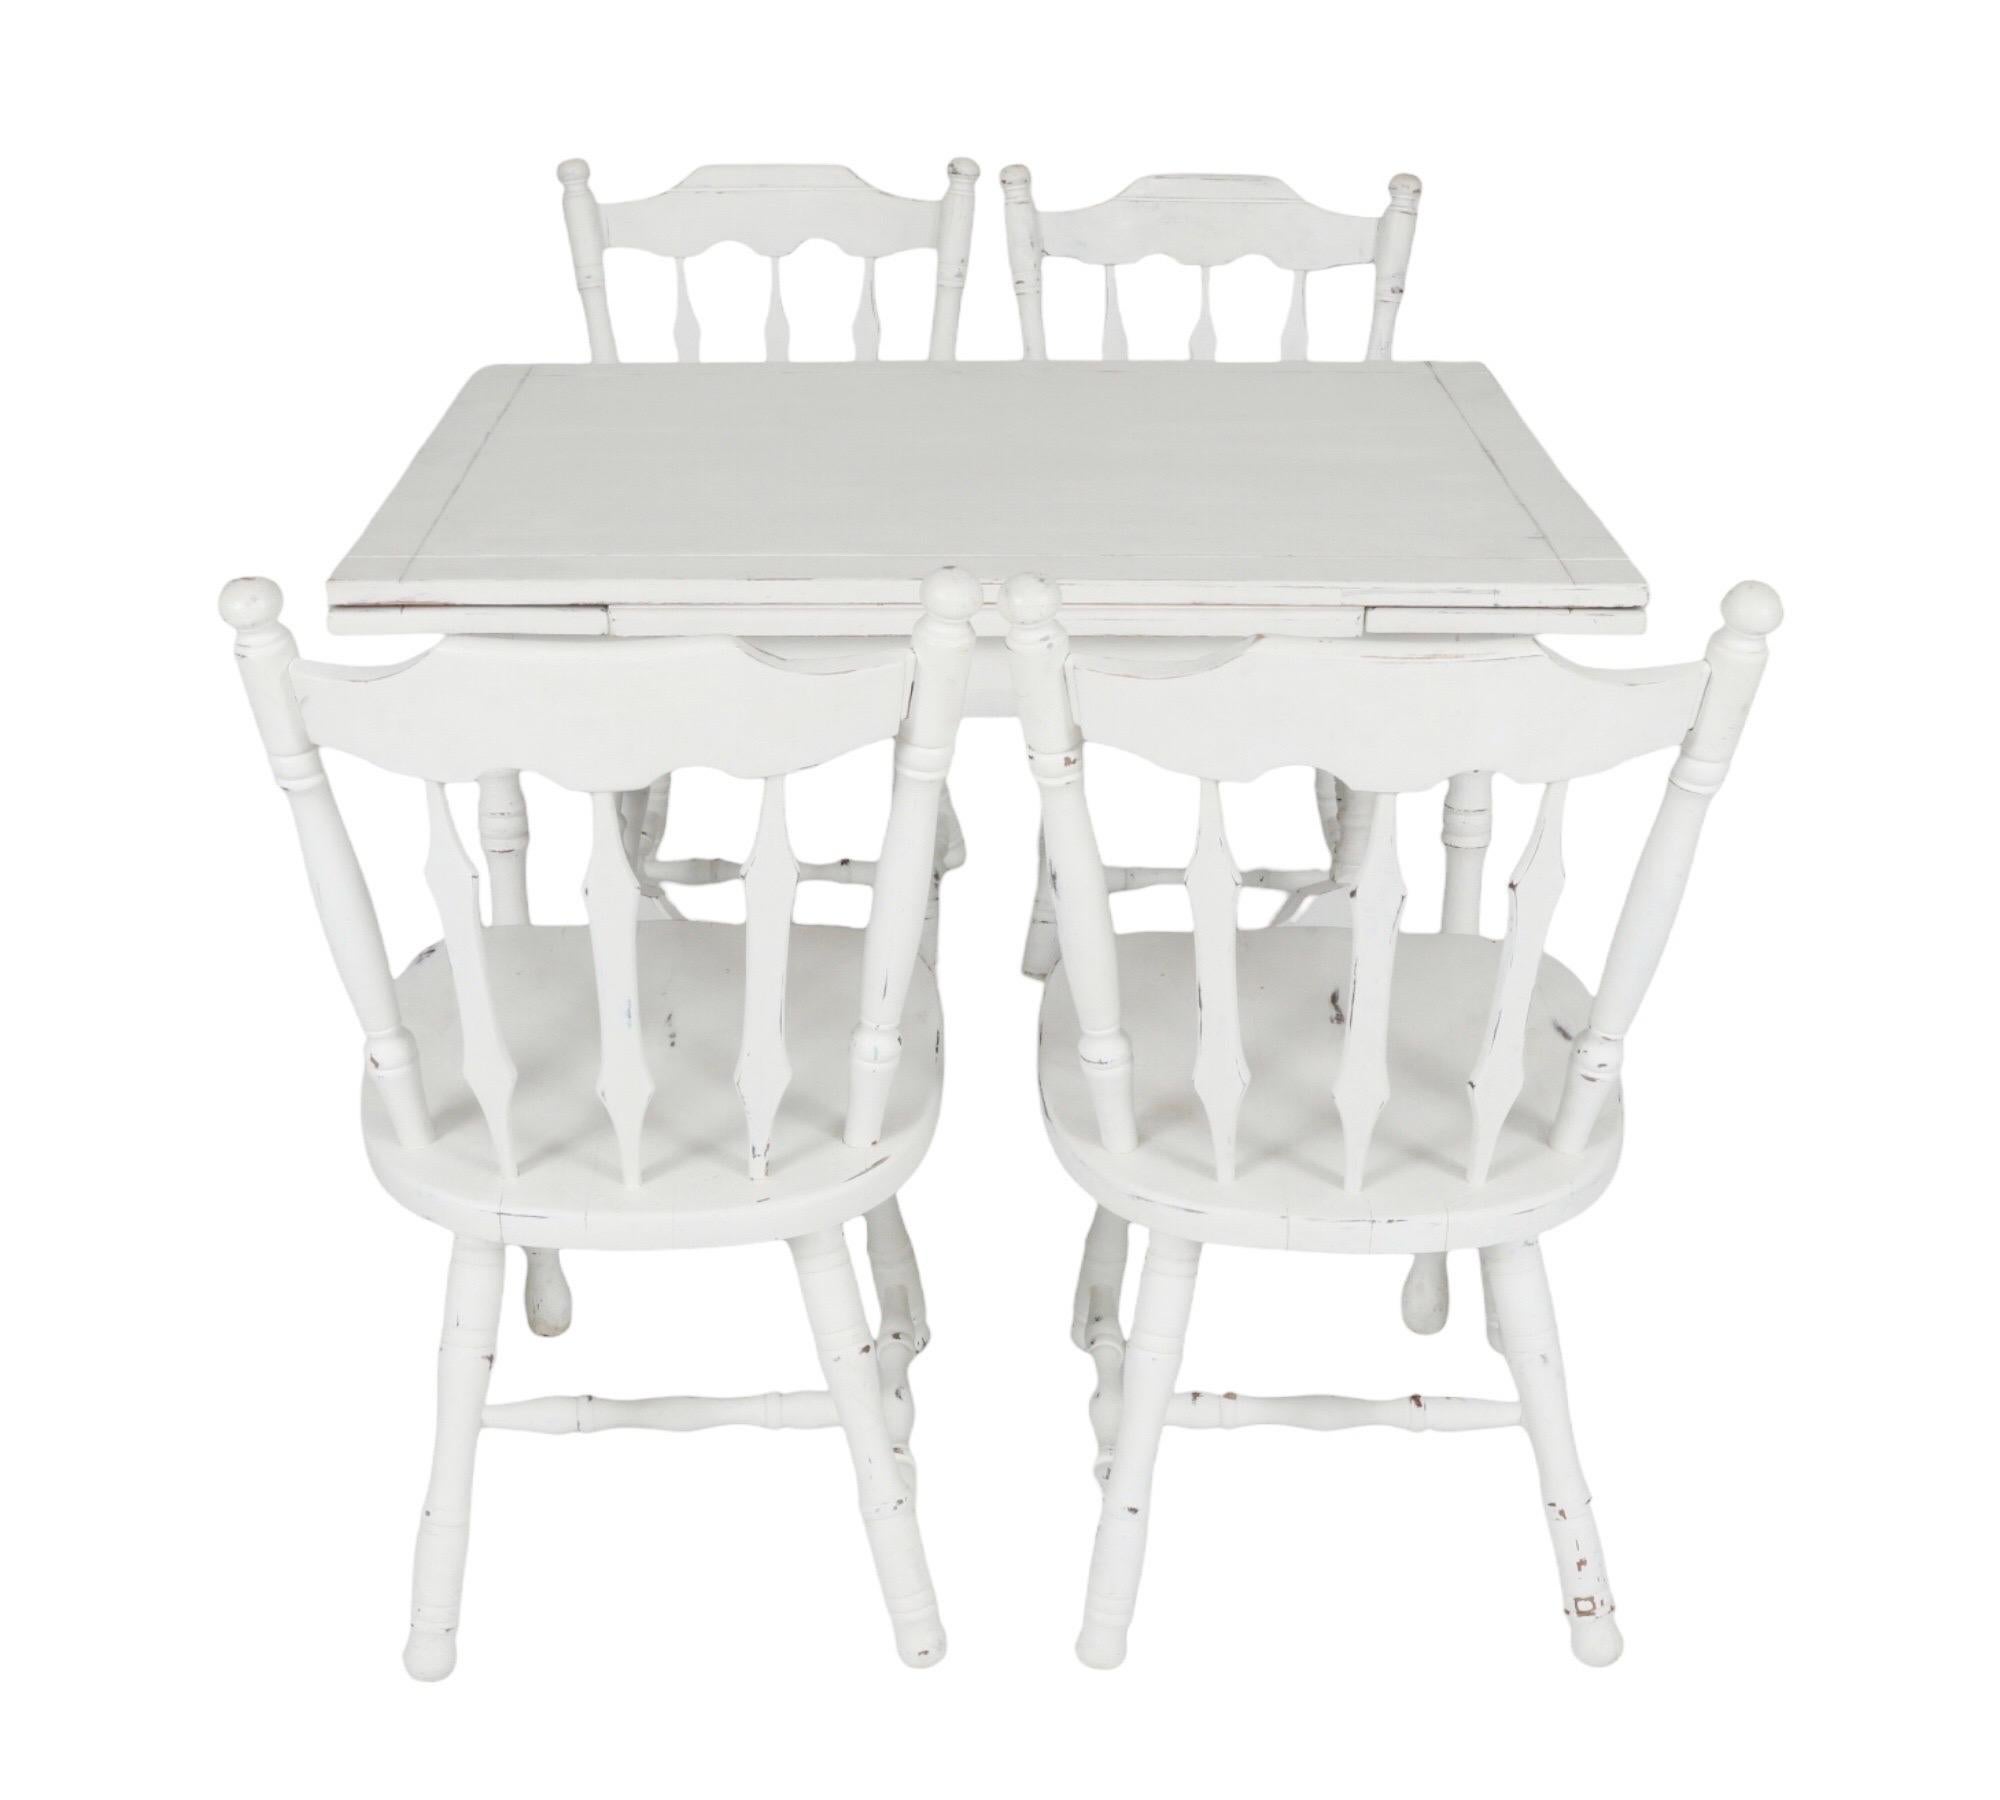 Ein weißer Bauernküchentisch mit vier passenden Esszimmerstühlen. Der Tisch lässt sich mit zwei ausziehbaren Platten erweitern, so dass er sechs Personen Platz bietet. Der Tisch ist mit einer geschnitzten Umrandung verziert und steht auf